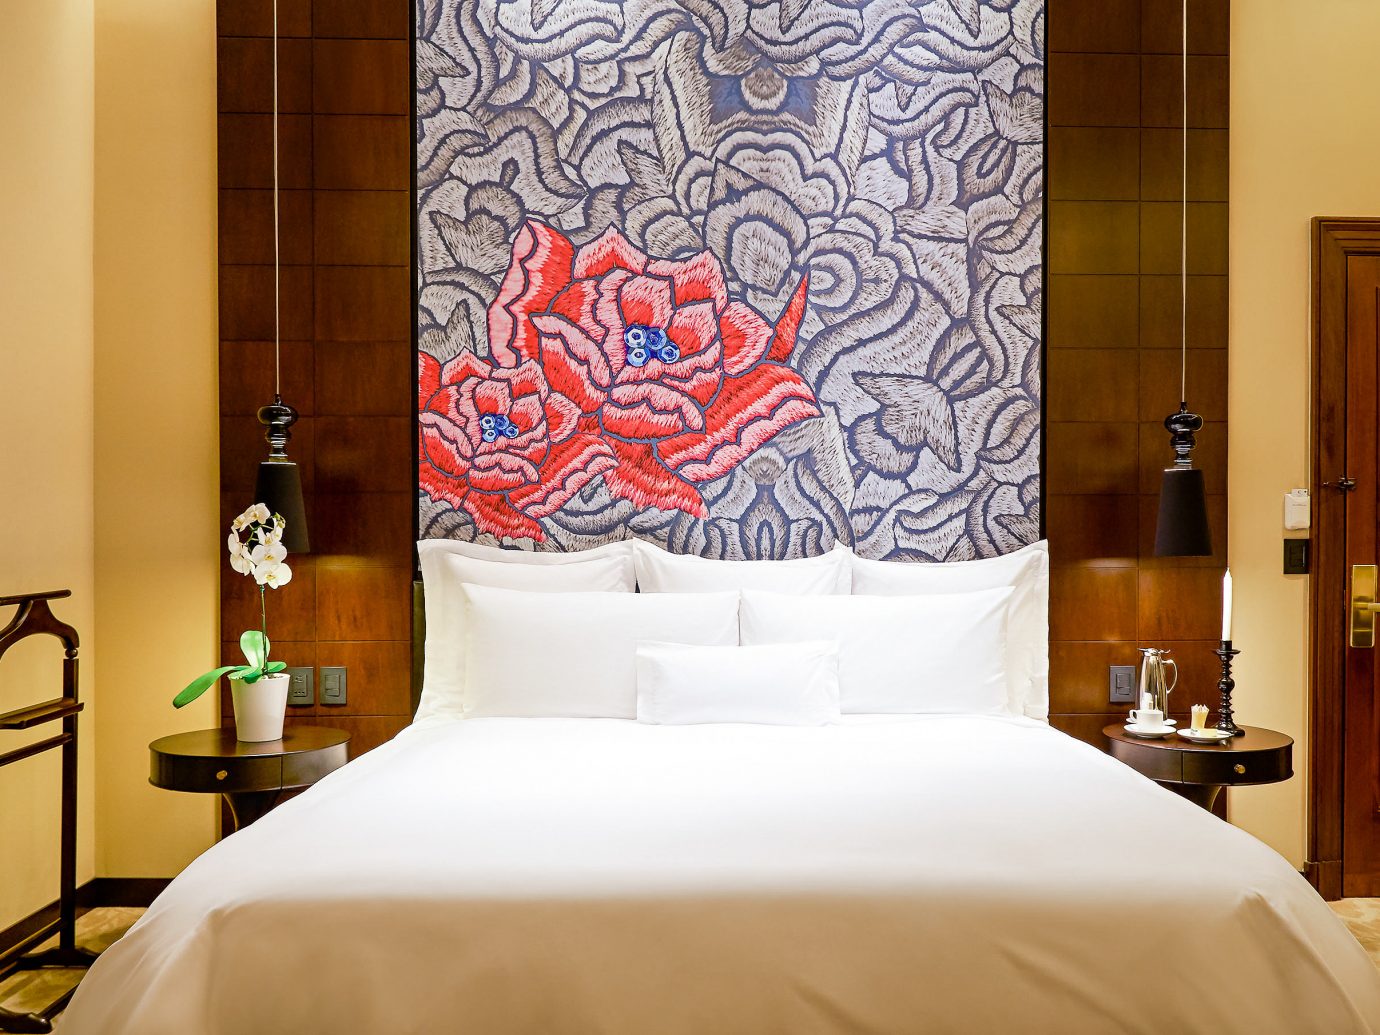 Boutique Hotels Hotels wall bed indoor room Suite interior design Bedroom bed frame bed sheet hotel flooring